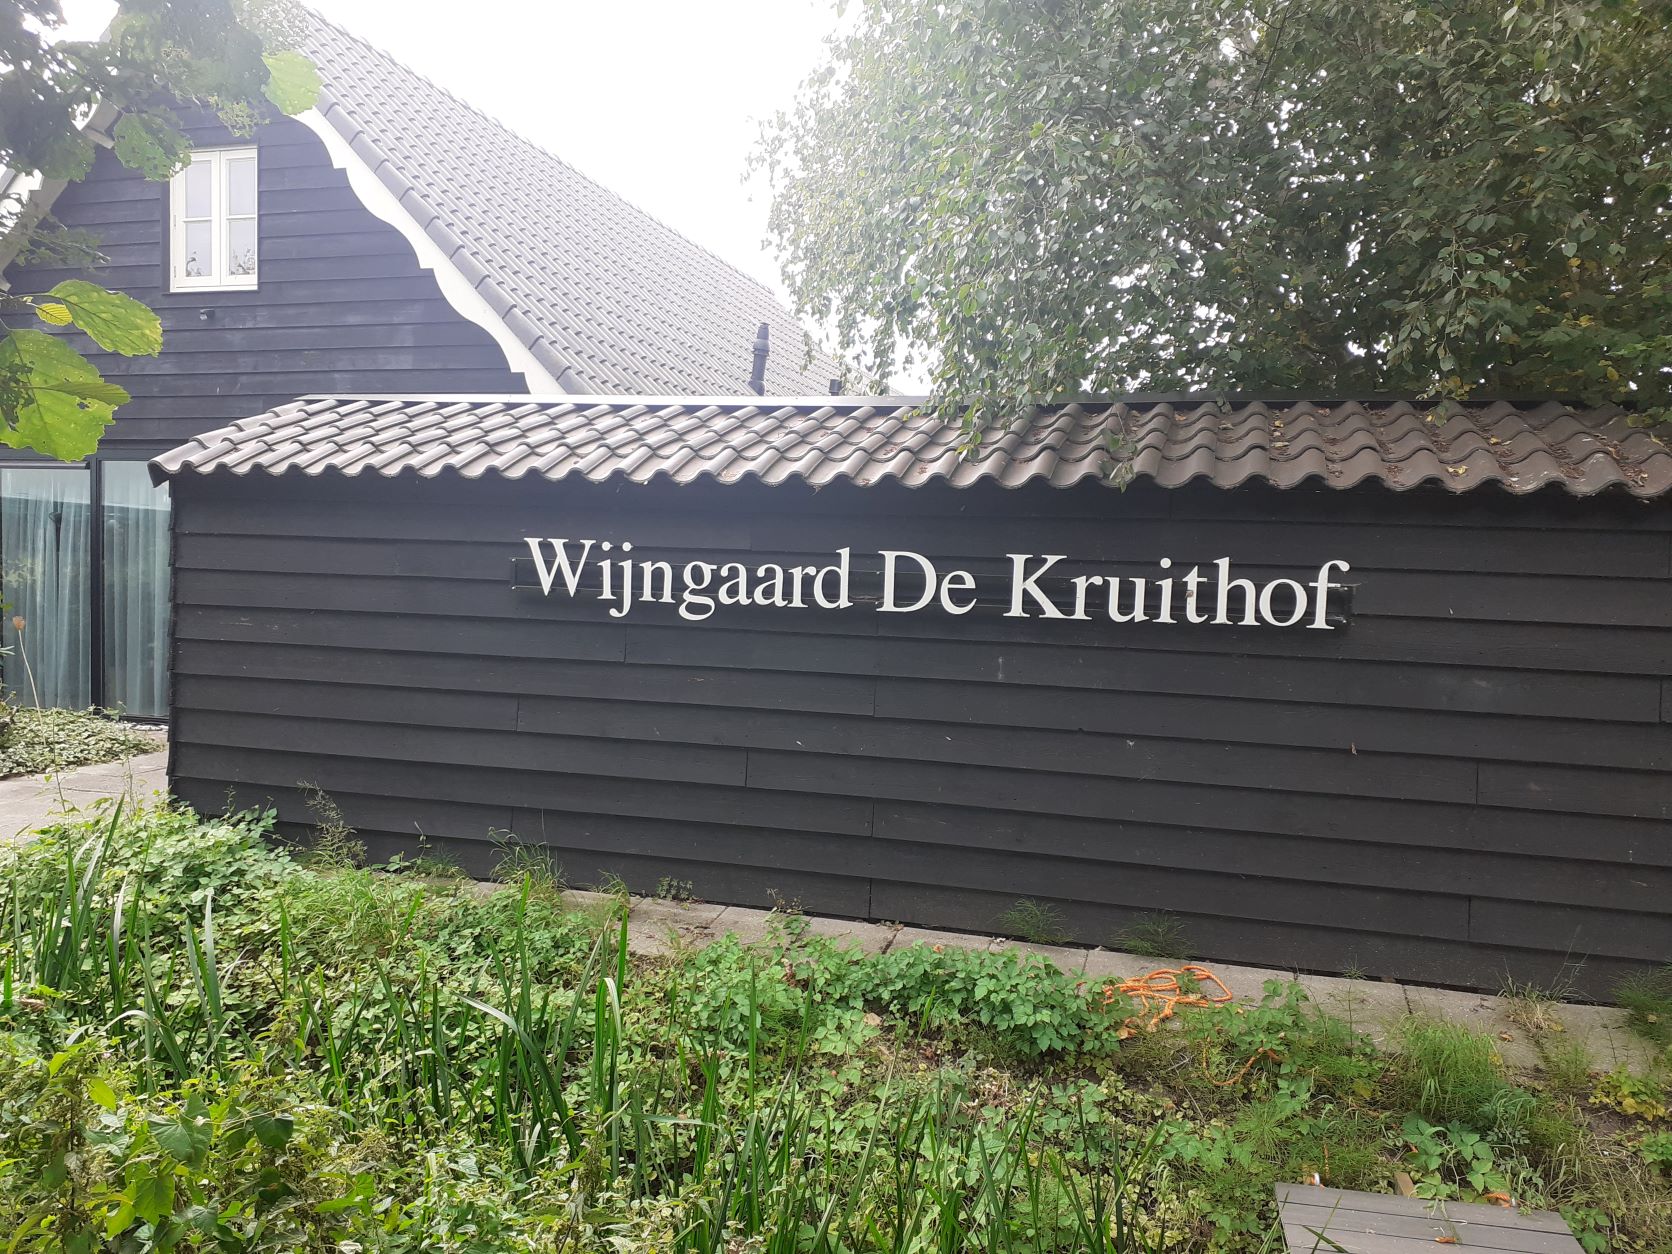 Wijngaard De Kruithof